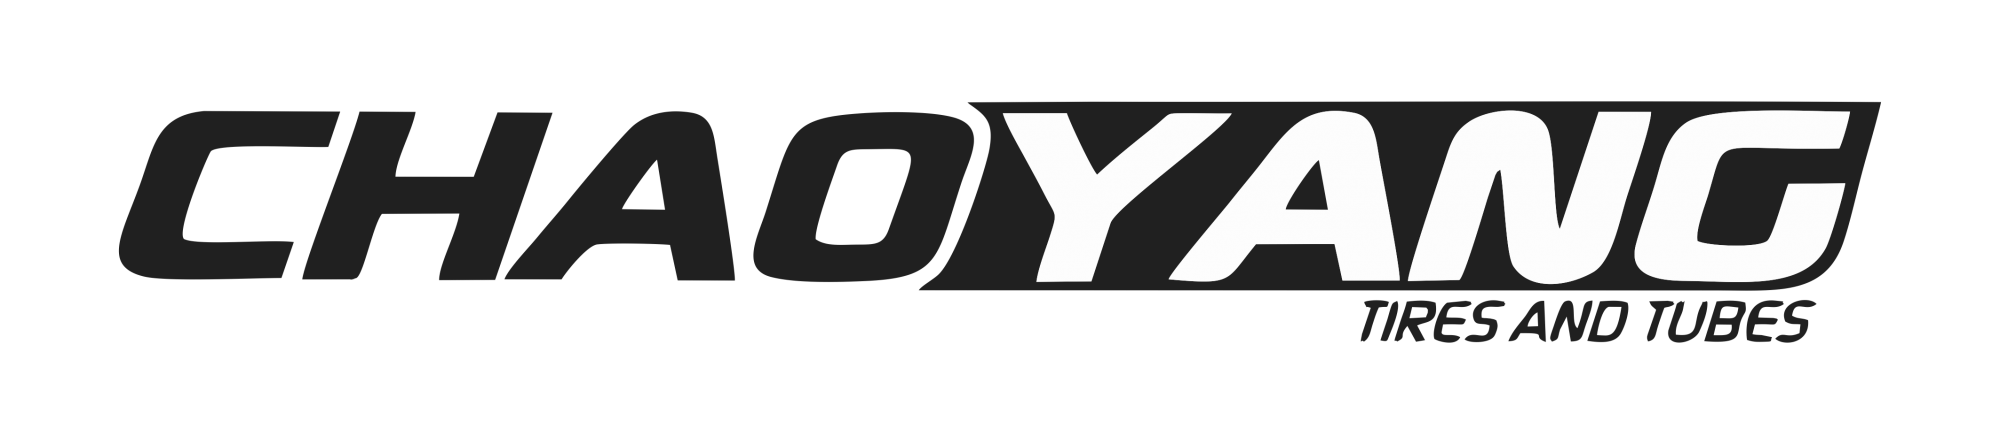 CHAOYANG logo big